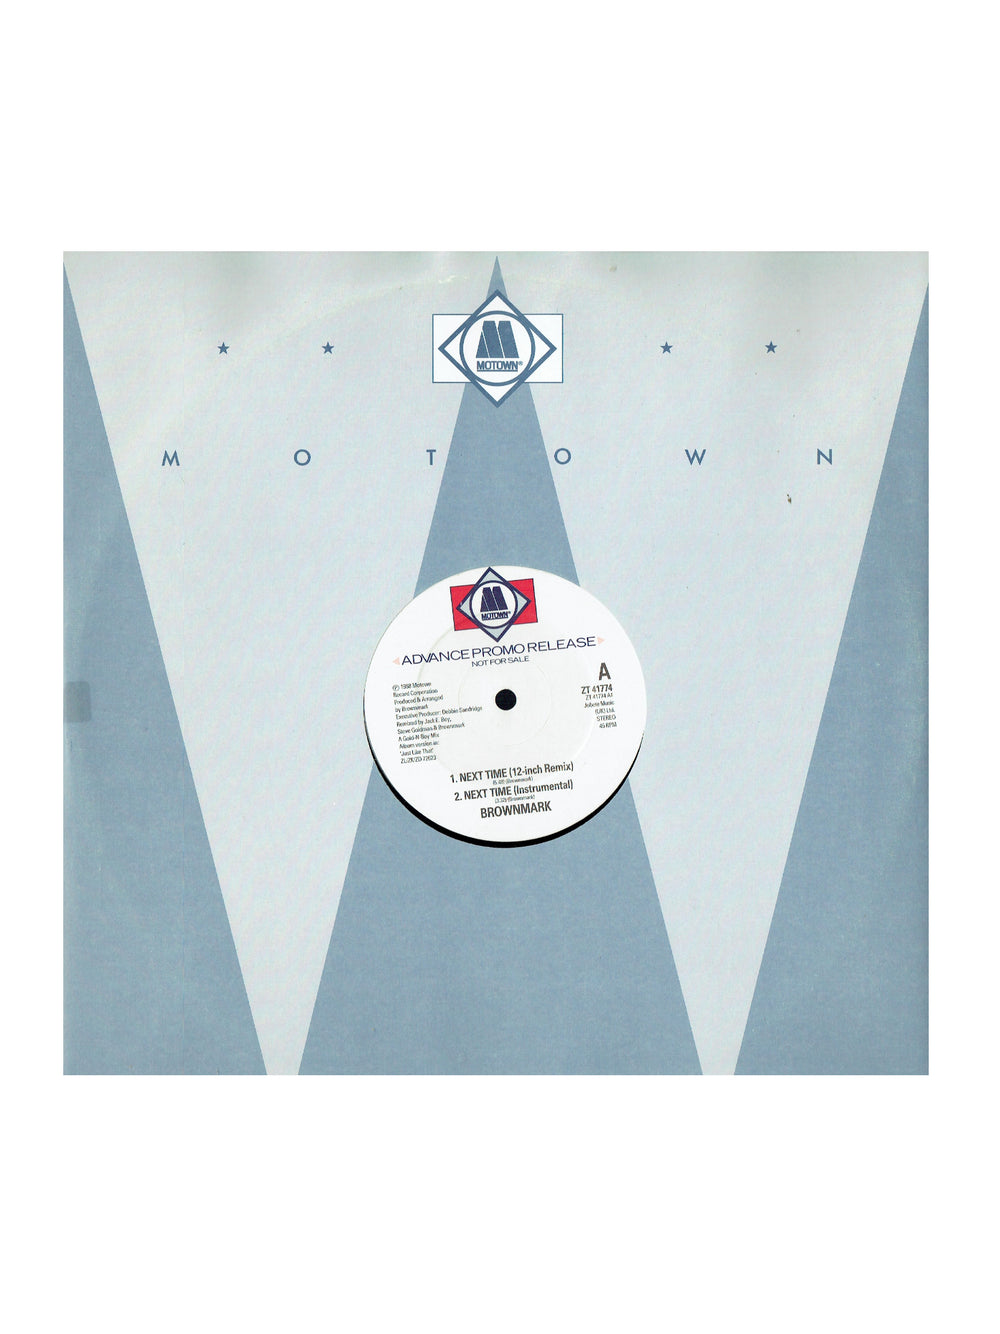 Prince – Brownmark – Next Time Vinyl 12" Maxi-Single Promo UK Preloved : 1988 sms